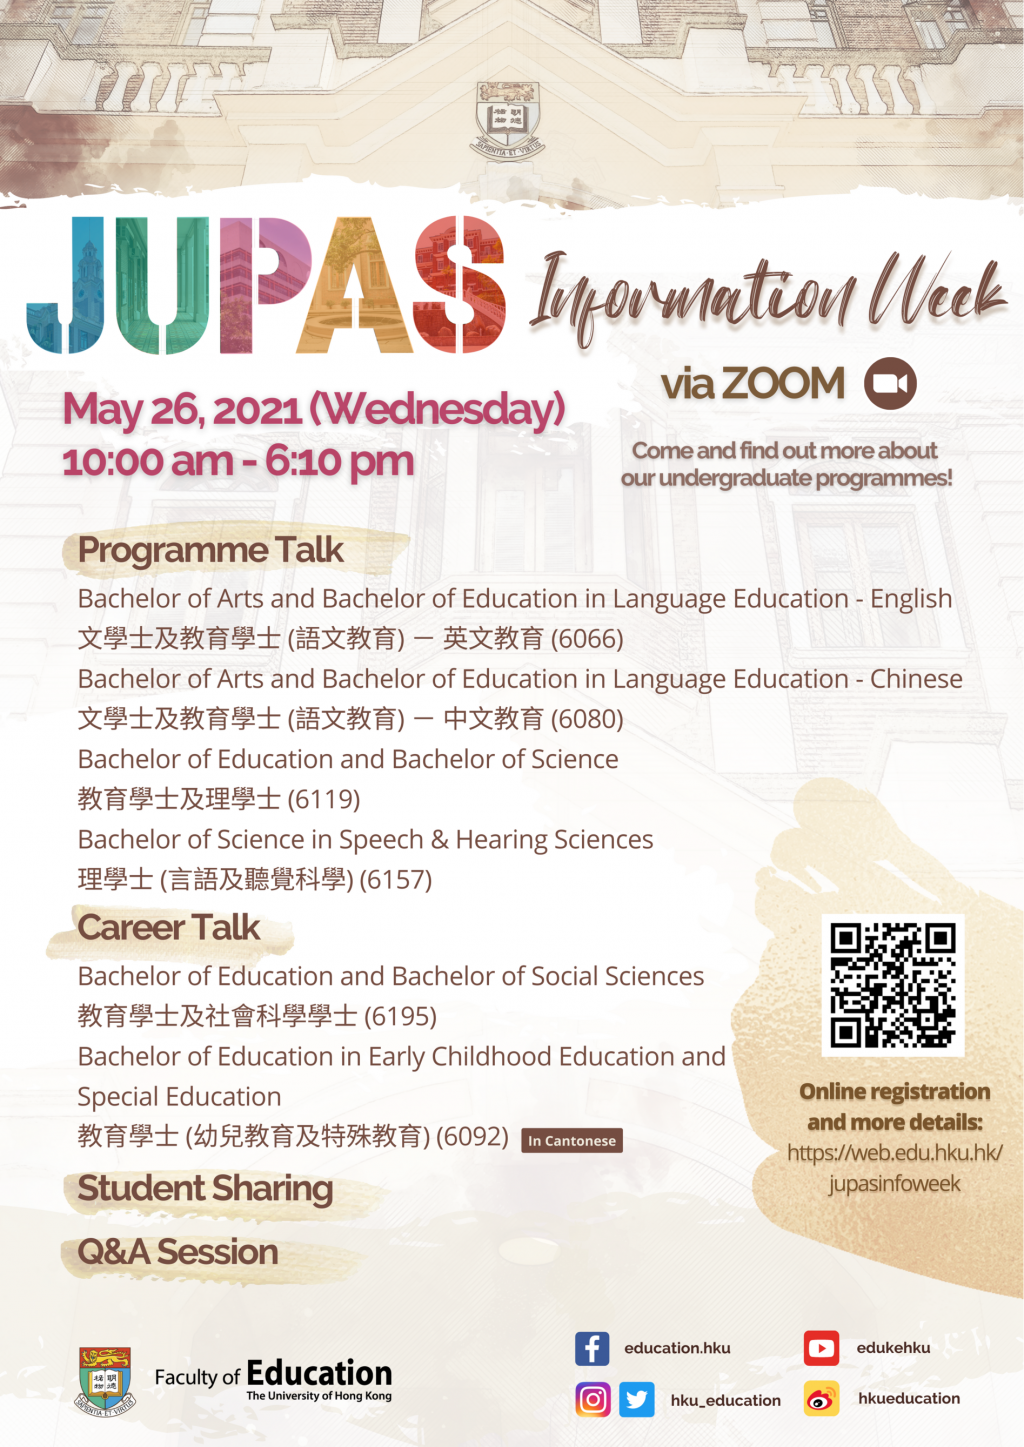 JUPAS Information Week